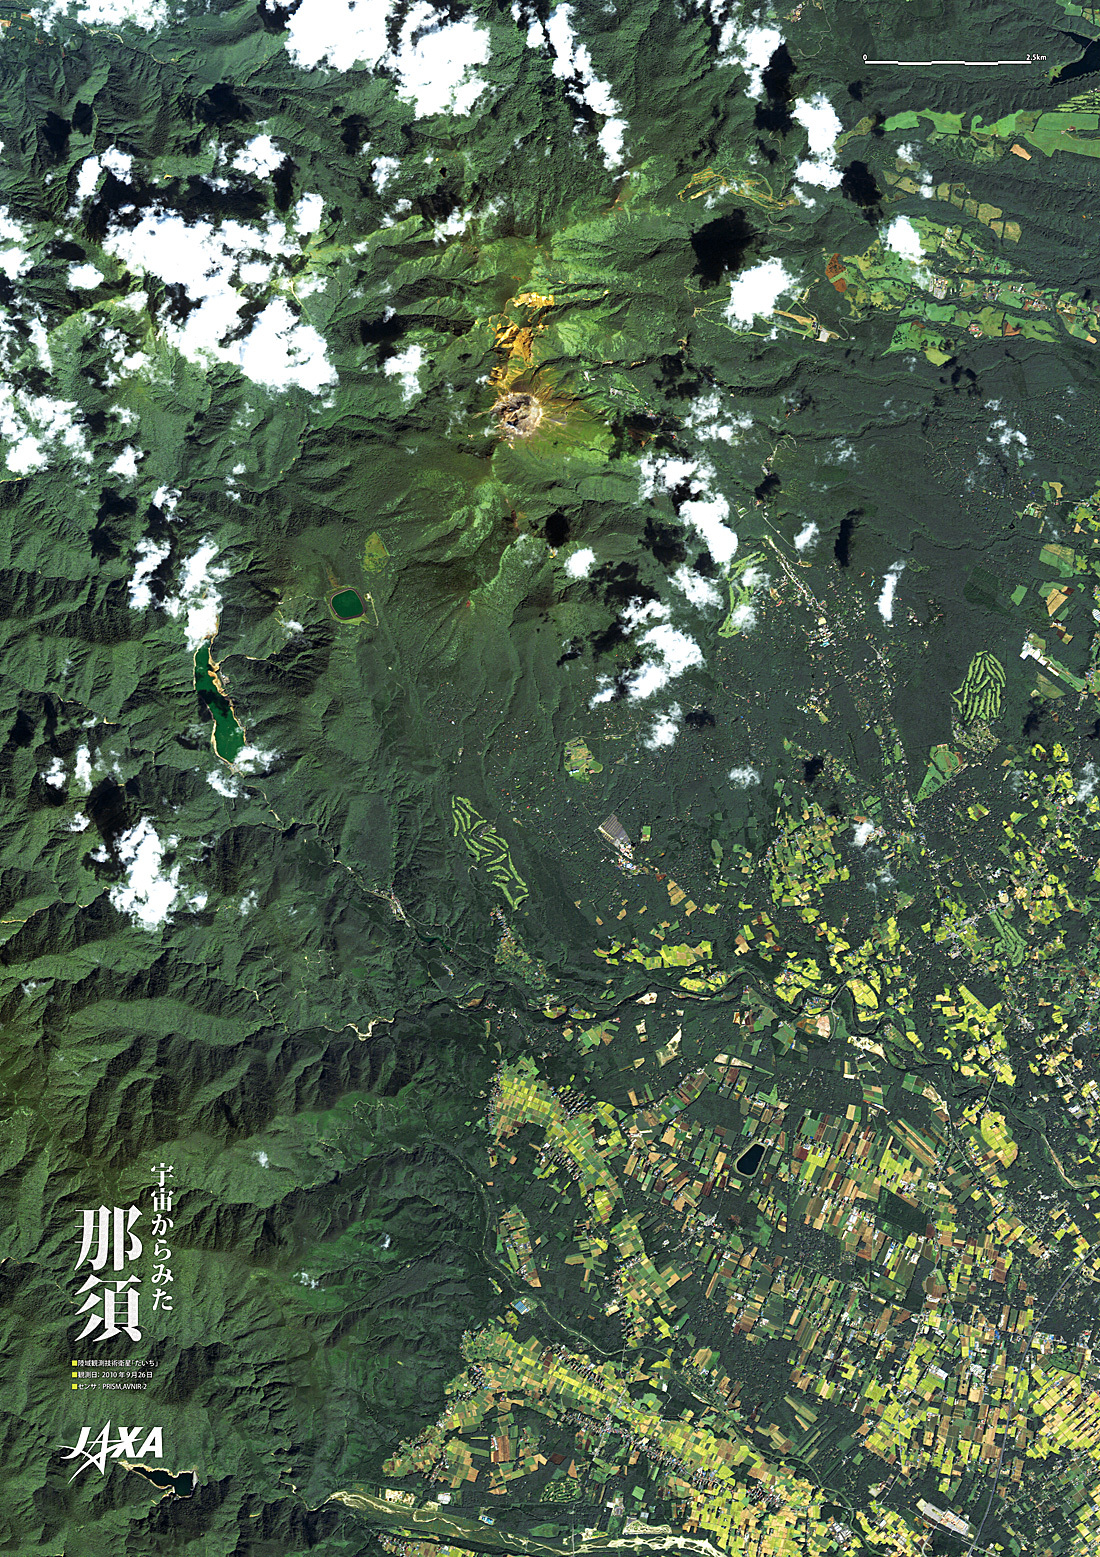 だいちから見た日本の都市 那須:衛星画像（ポスター仕上げ）